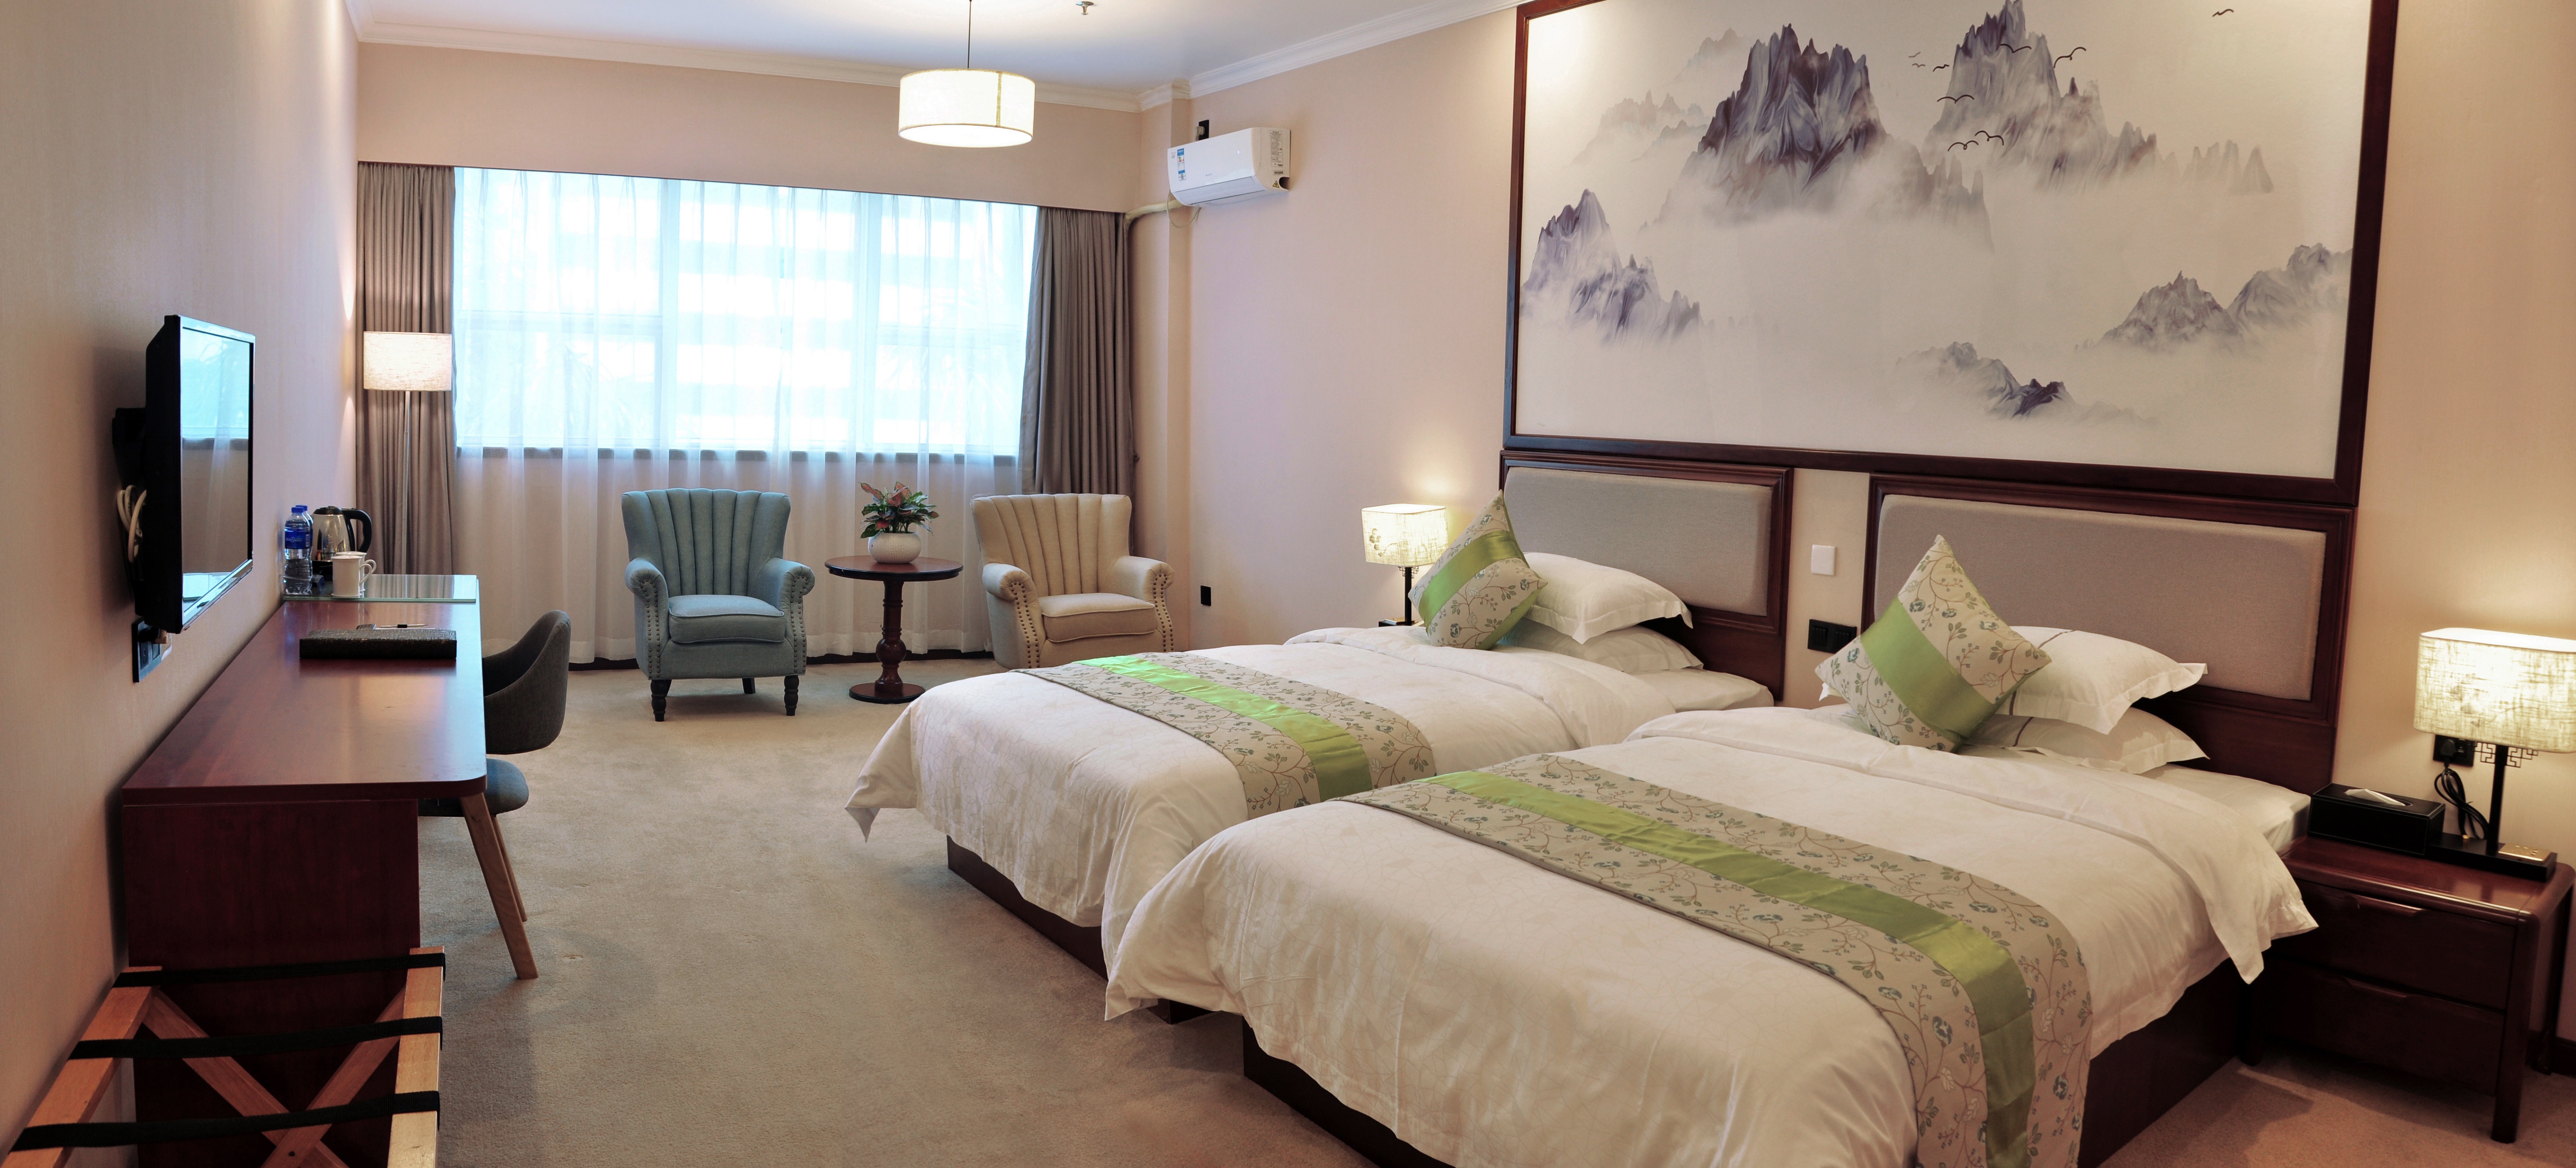 珠海凯迪克酒店位于繁华的吉大cbd商务区,从酒店车行五分钟即可到达